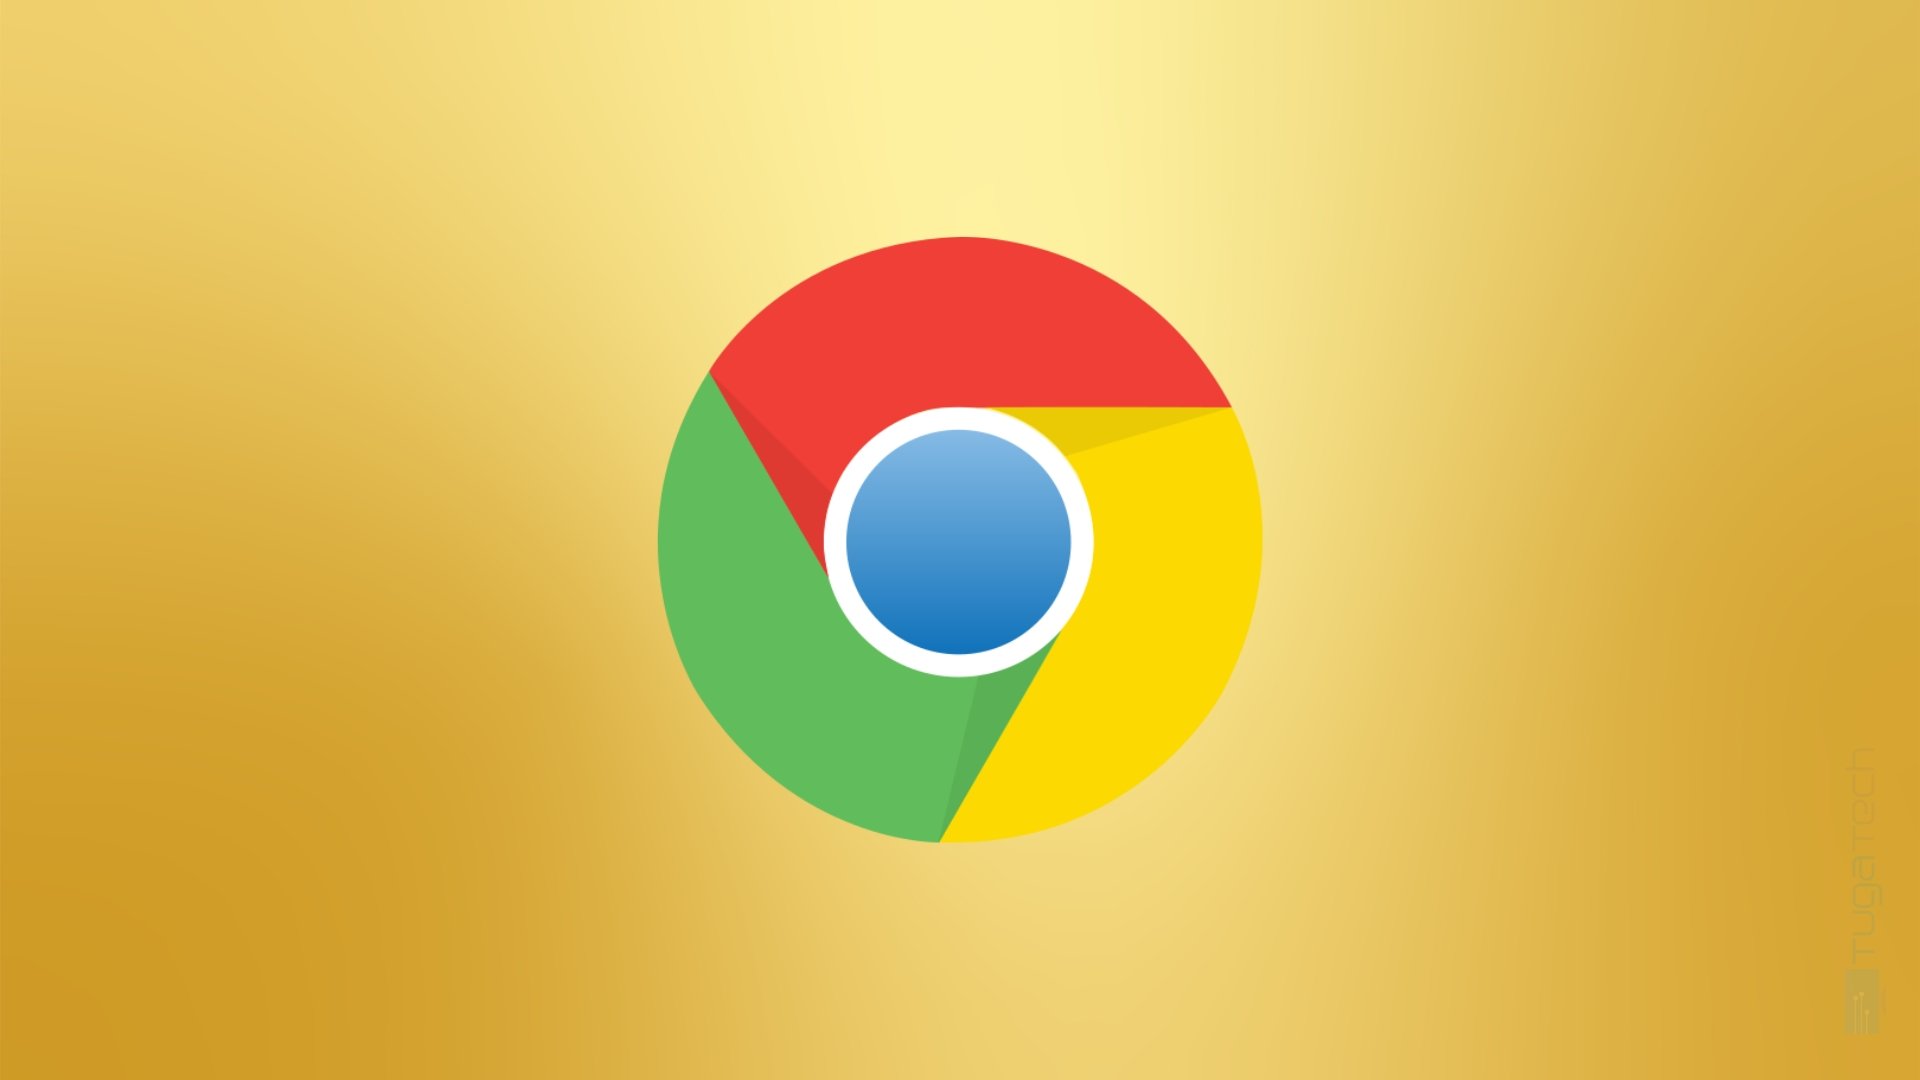 Chrome atualiza mensagem do Modo Anónimo após processo legal